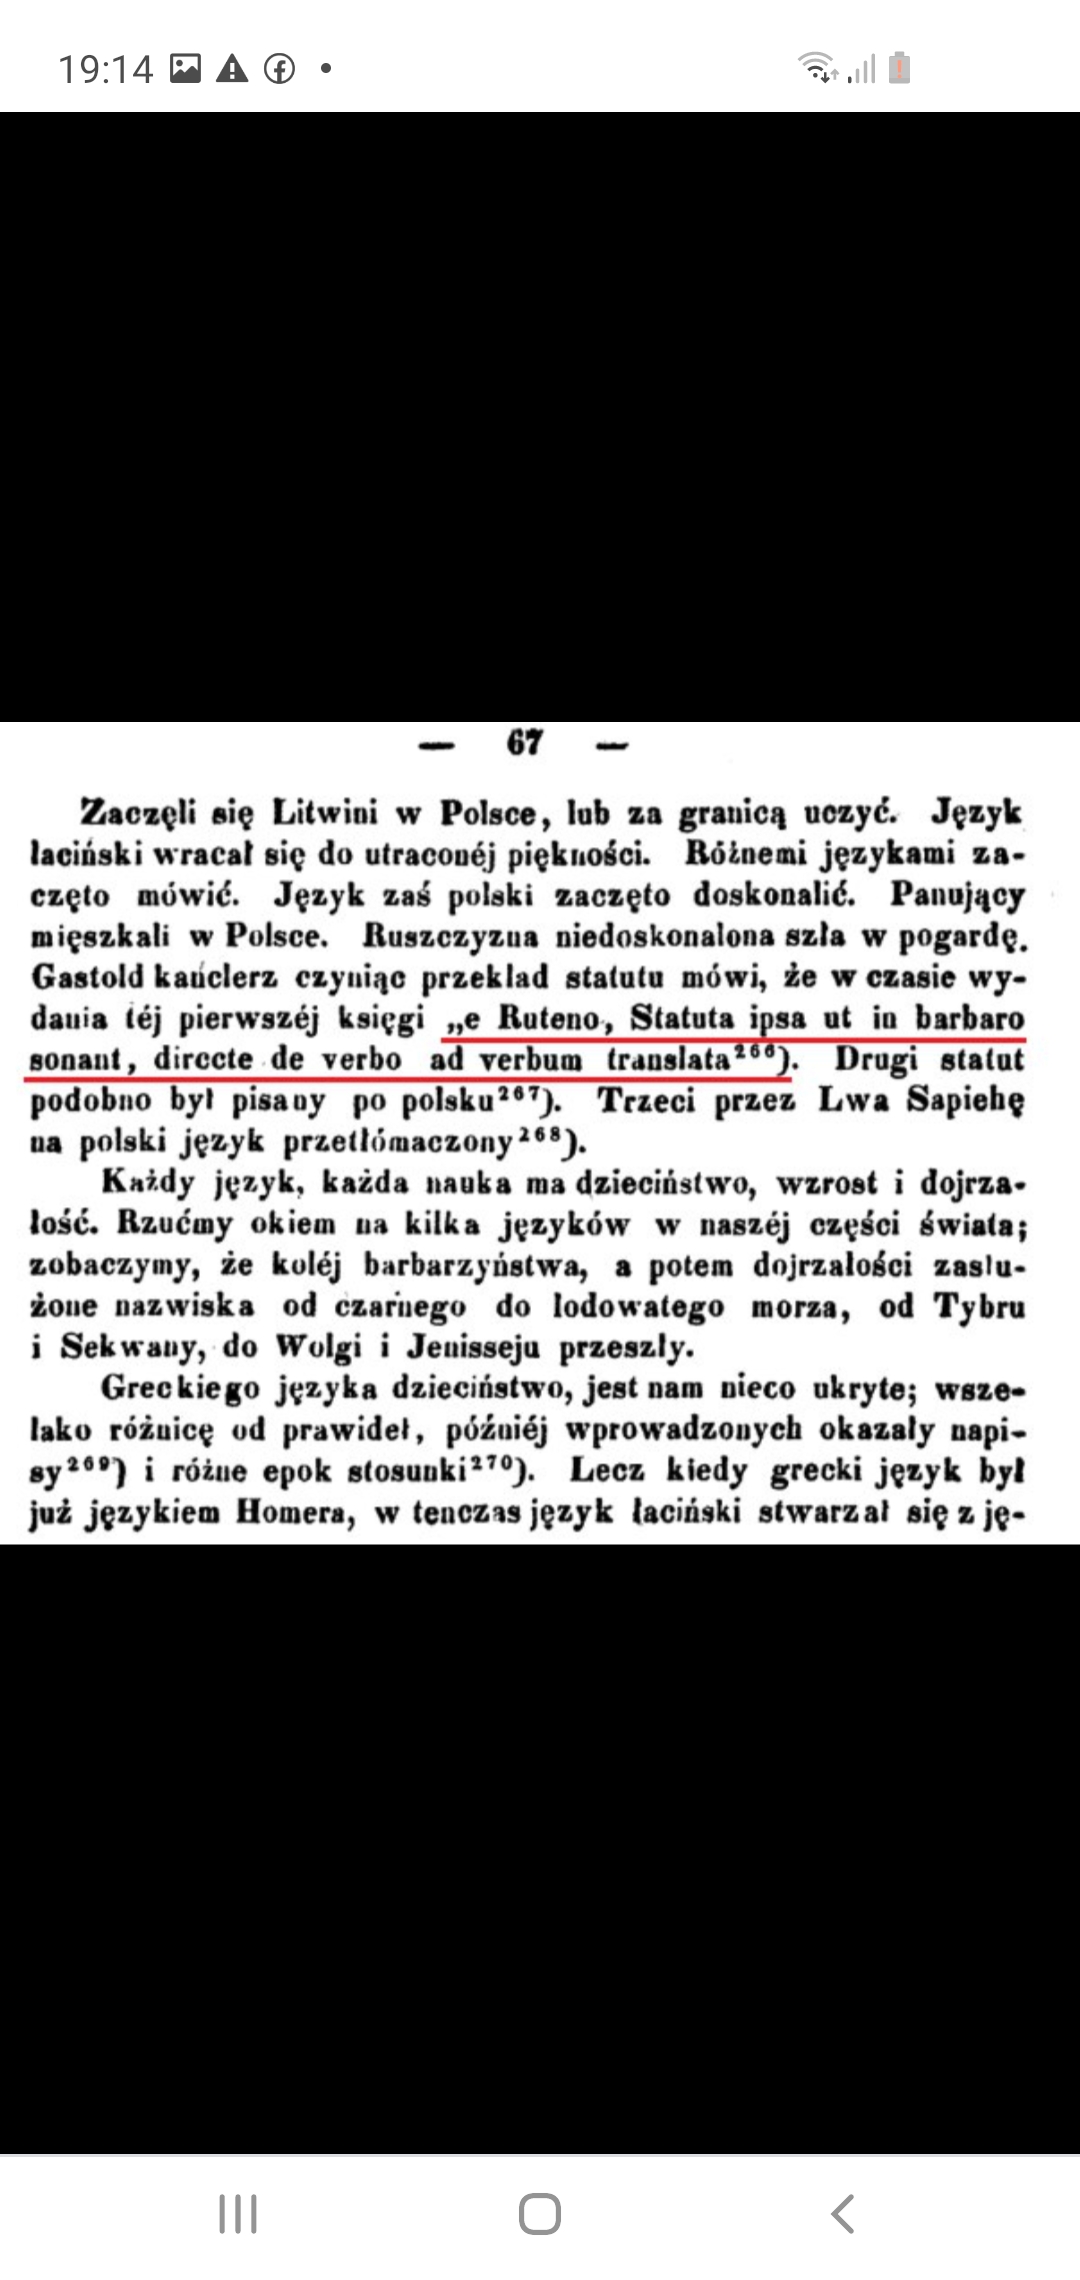 Rutenų kalba barbariška (1 statuto prakalba) - Edwarda Raczyńskiego.jpg